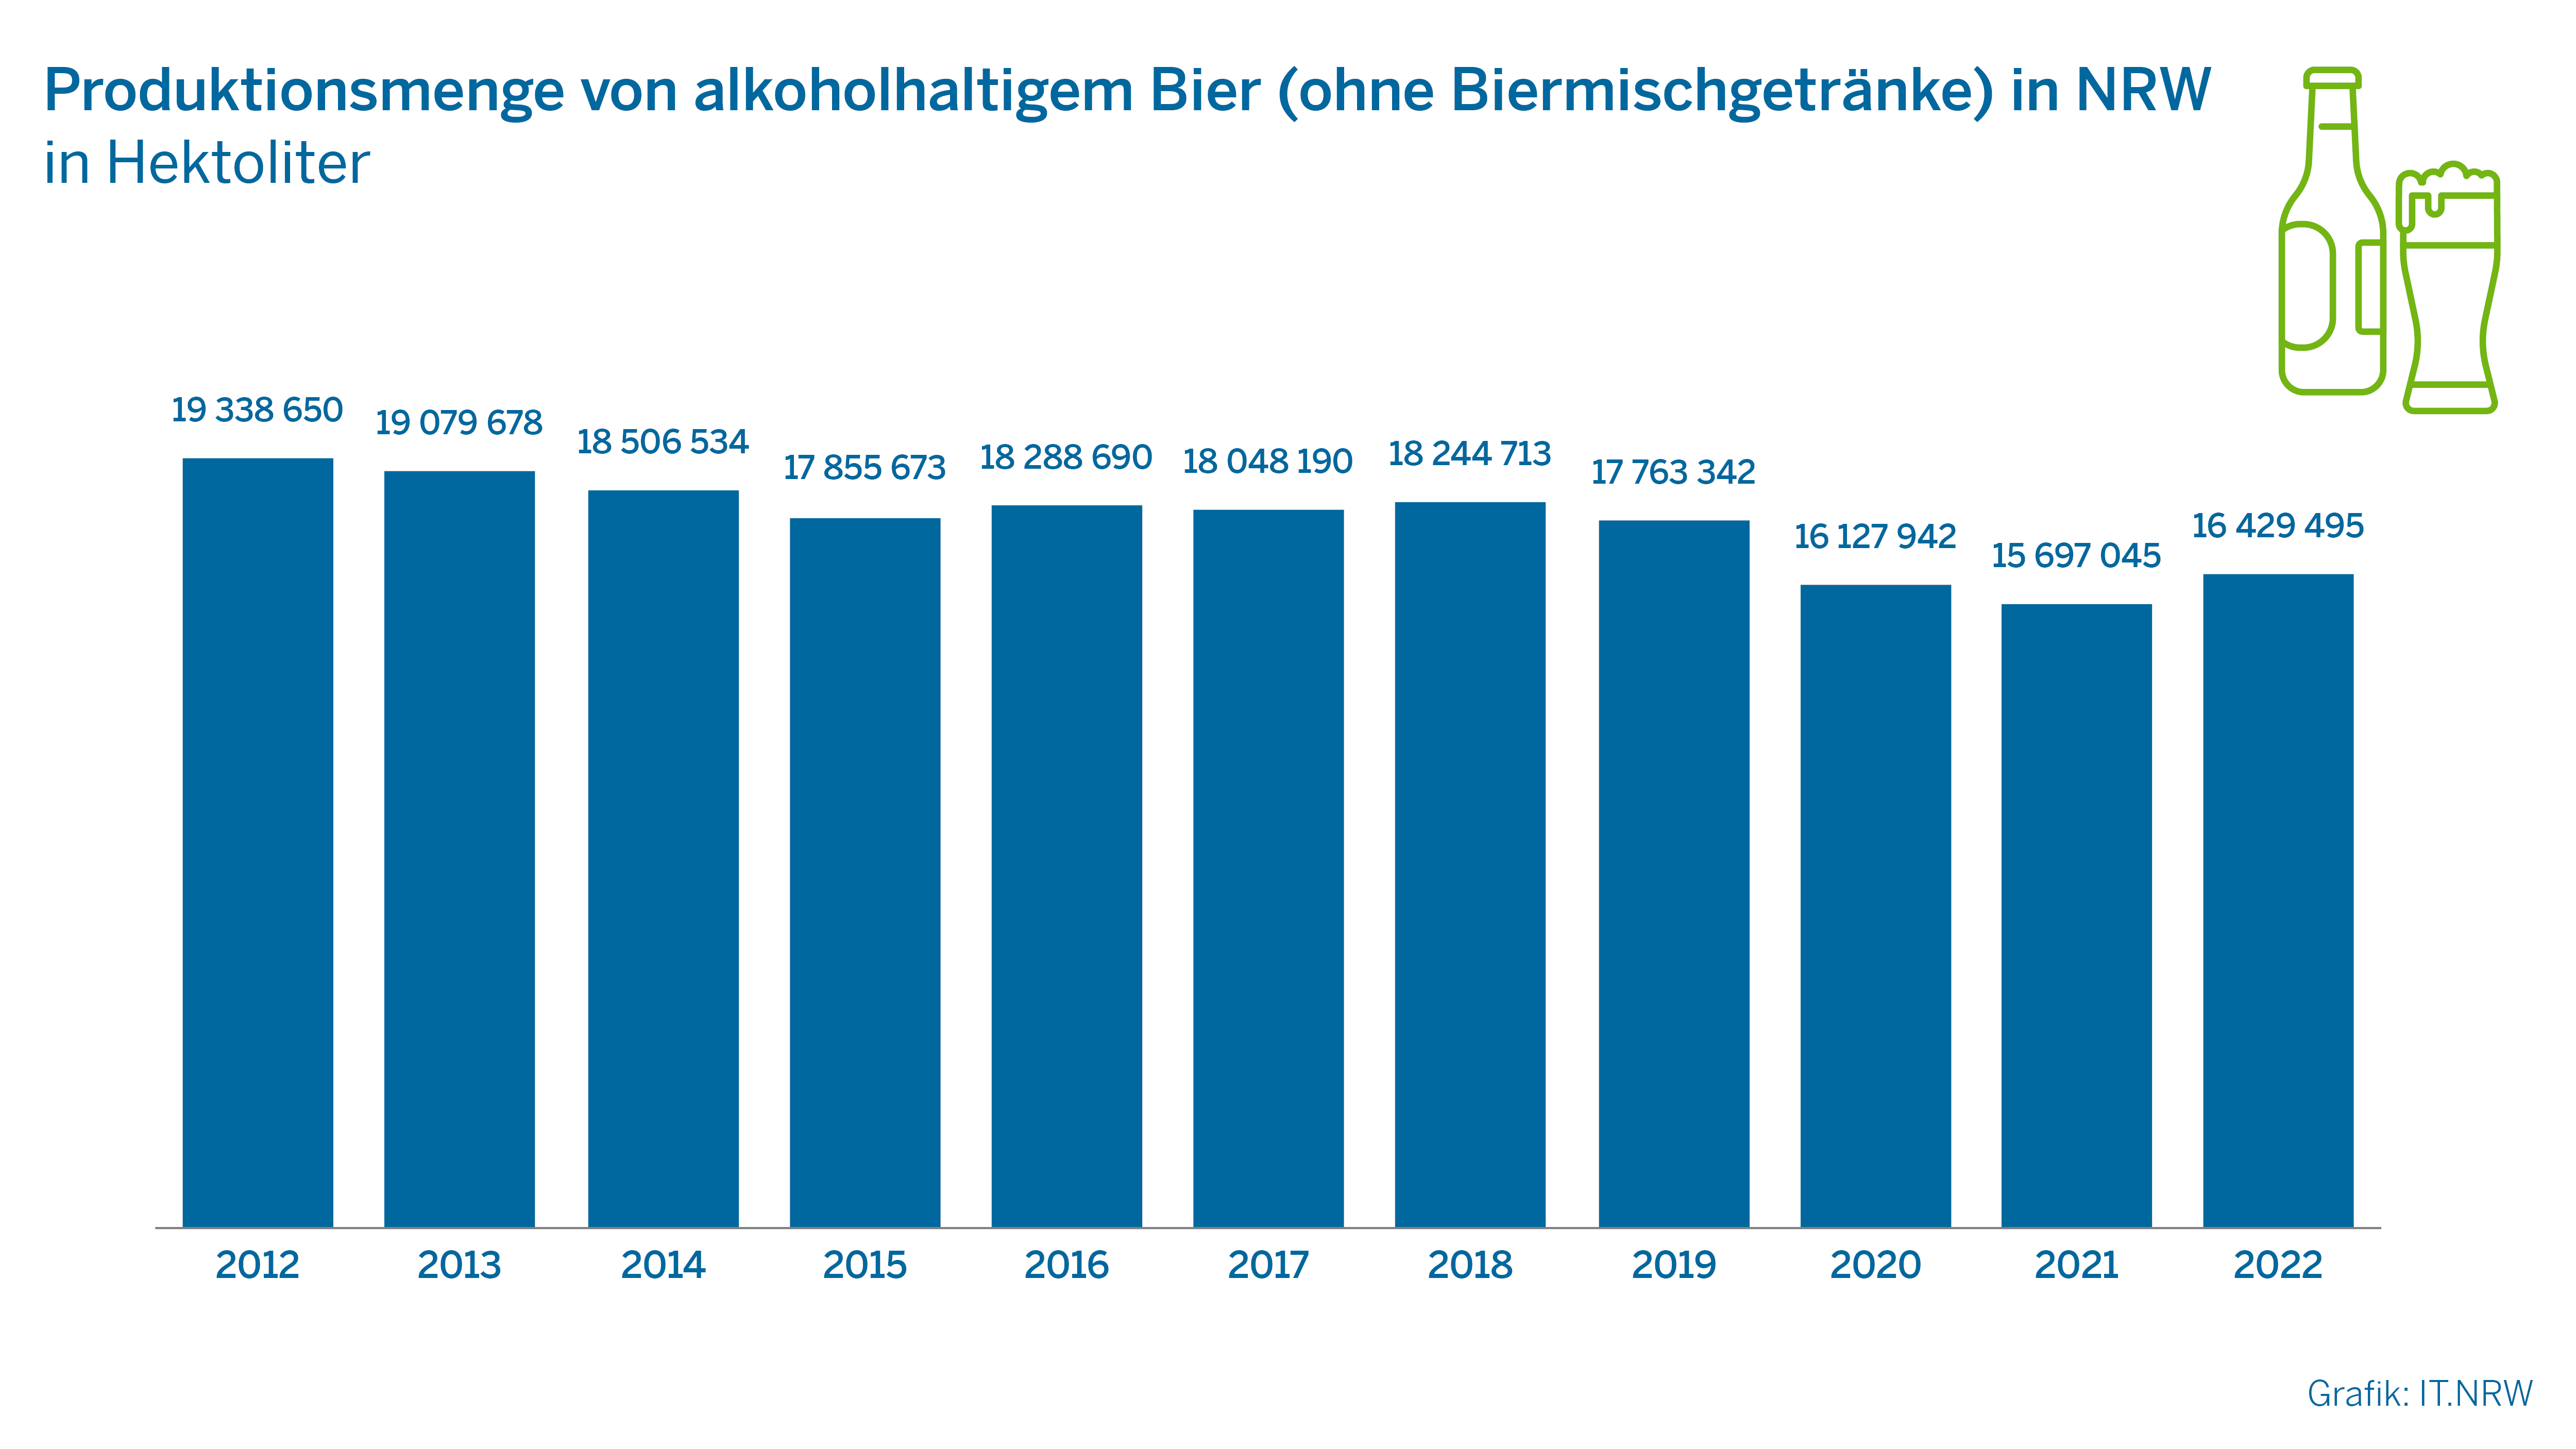 Produktionsmenge von alkoholhaltigem Bier (ohne Biermischgetränke) in NRW in Hektoliter